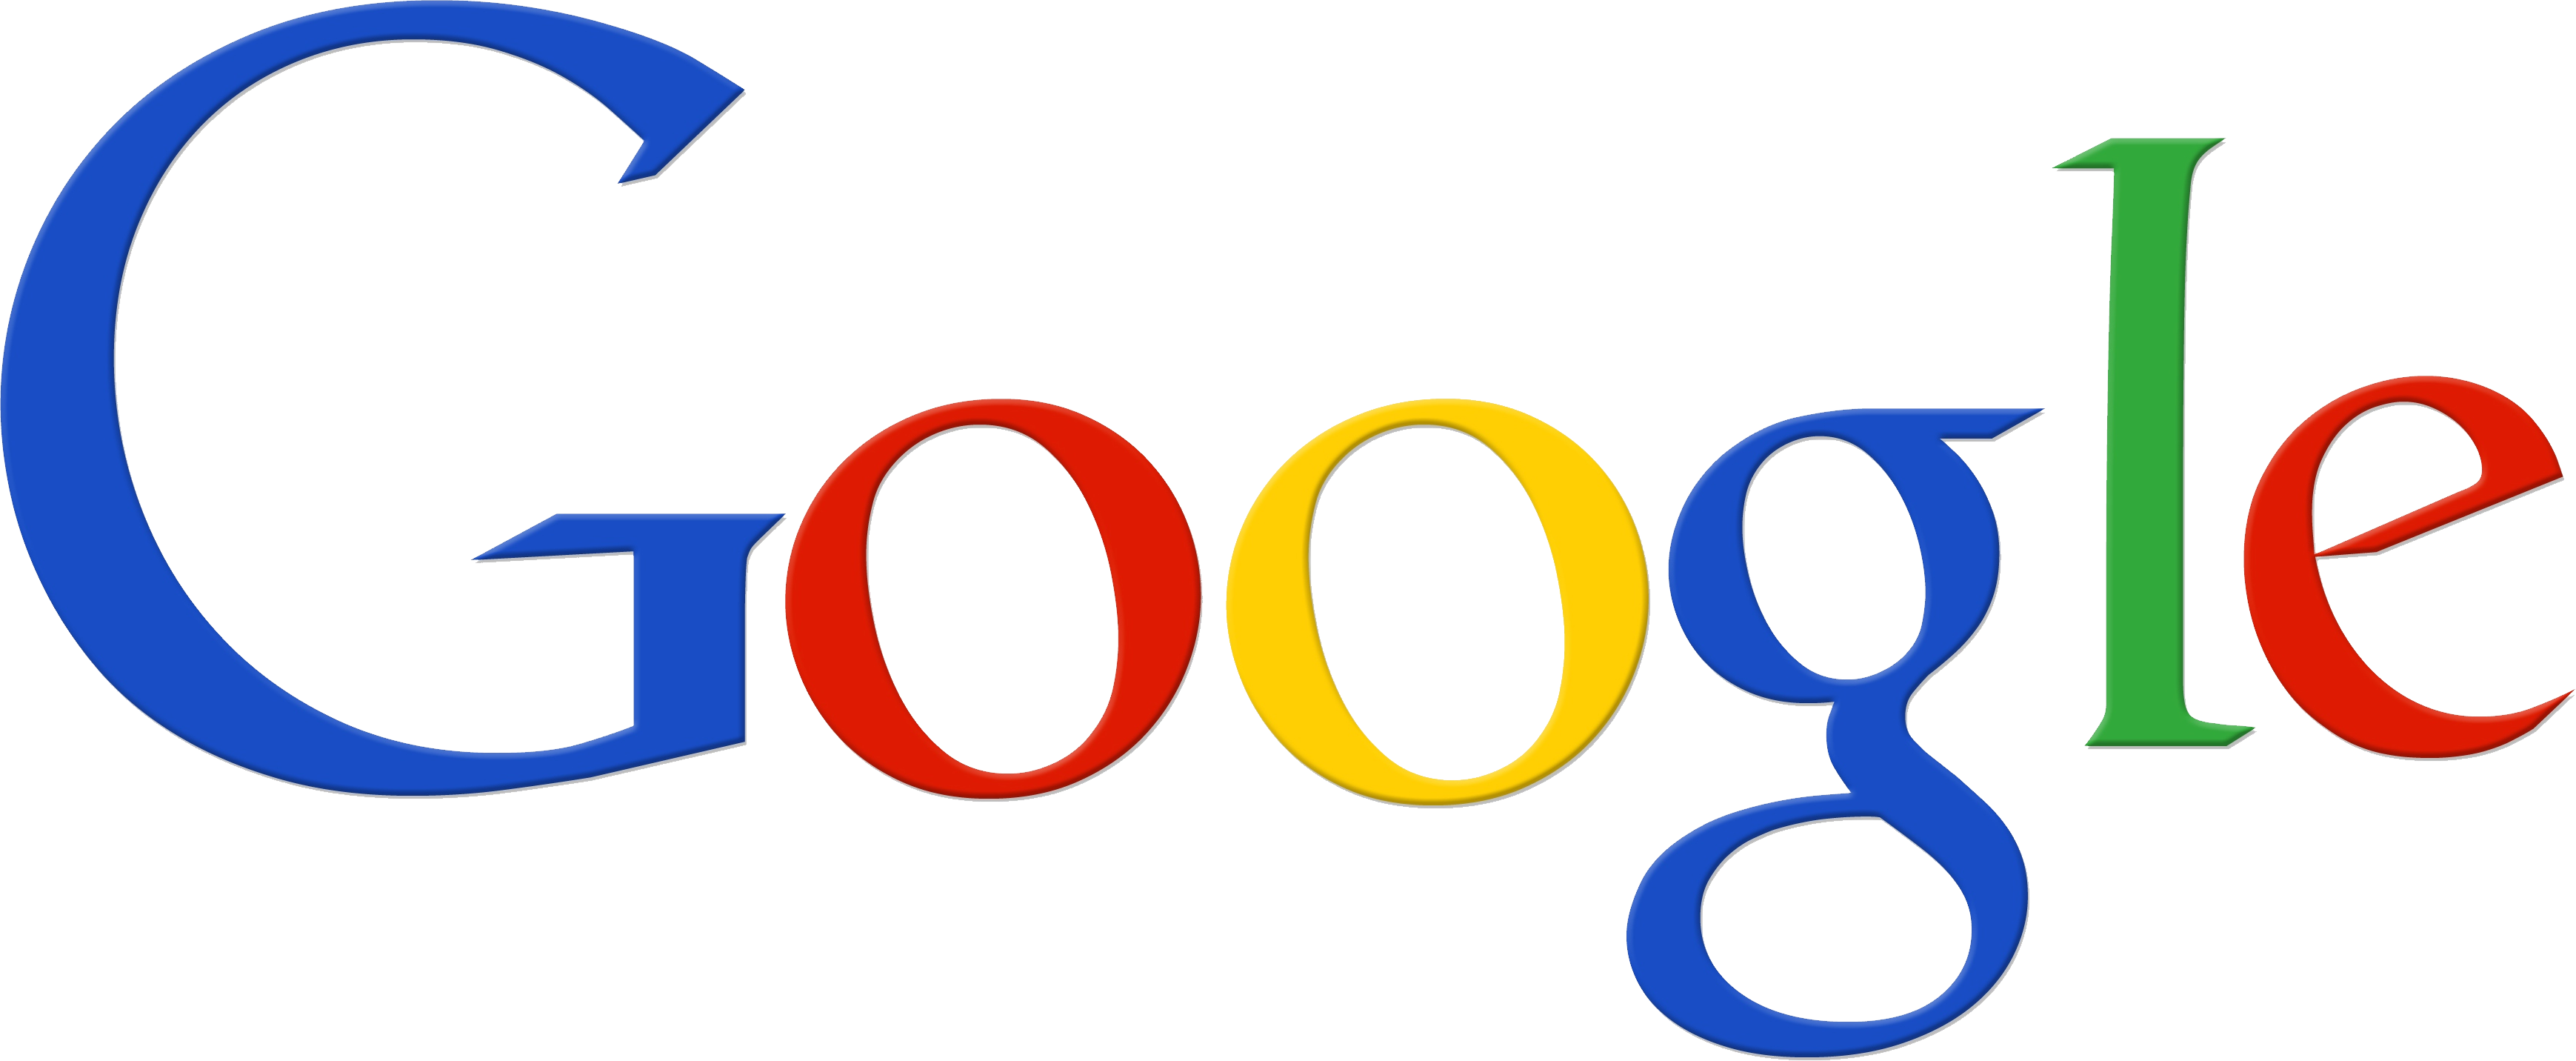 Google event. Гугл. Google логотип. Гугл картинки. Google логотип без фона.